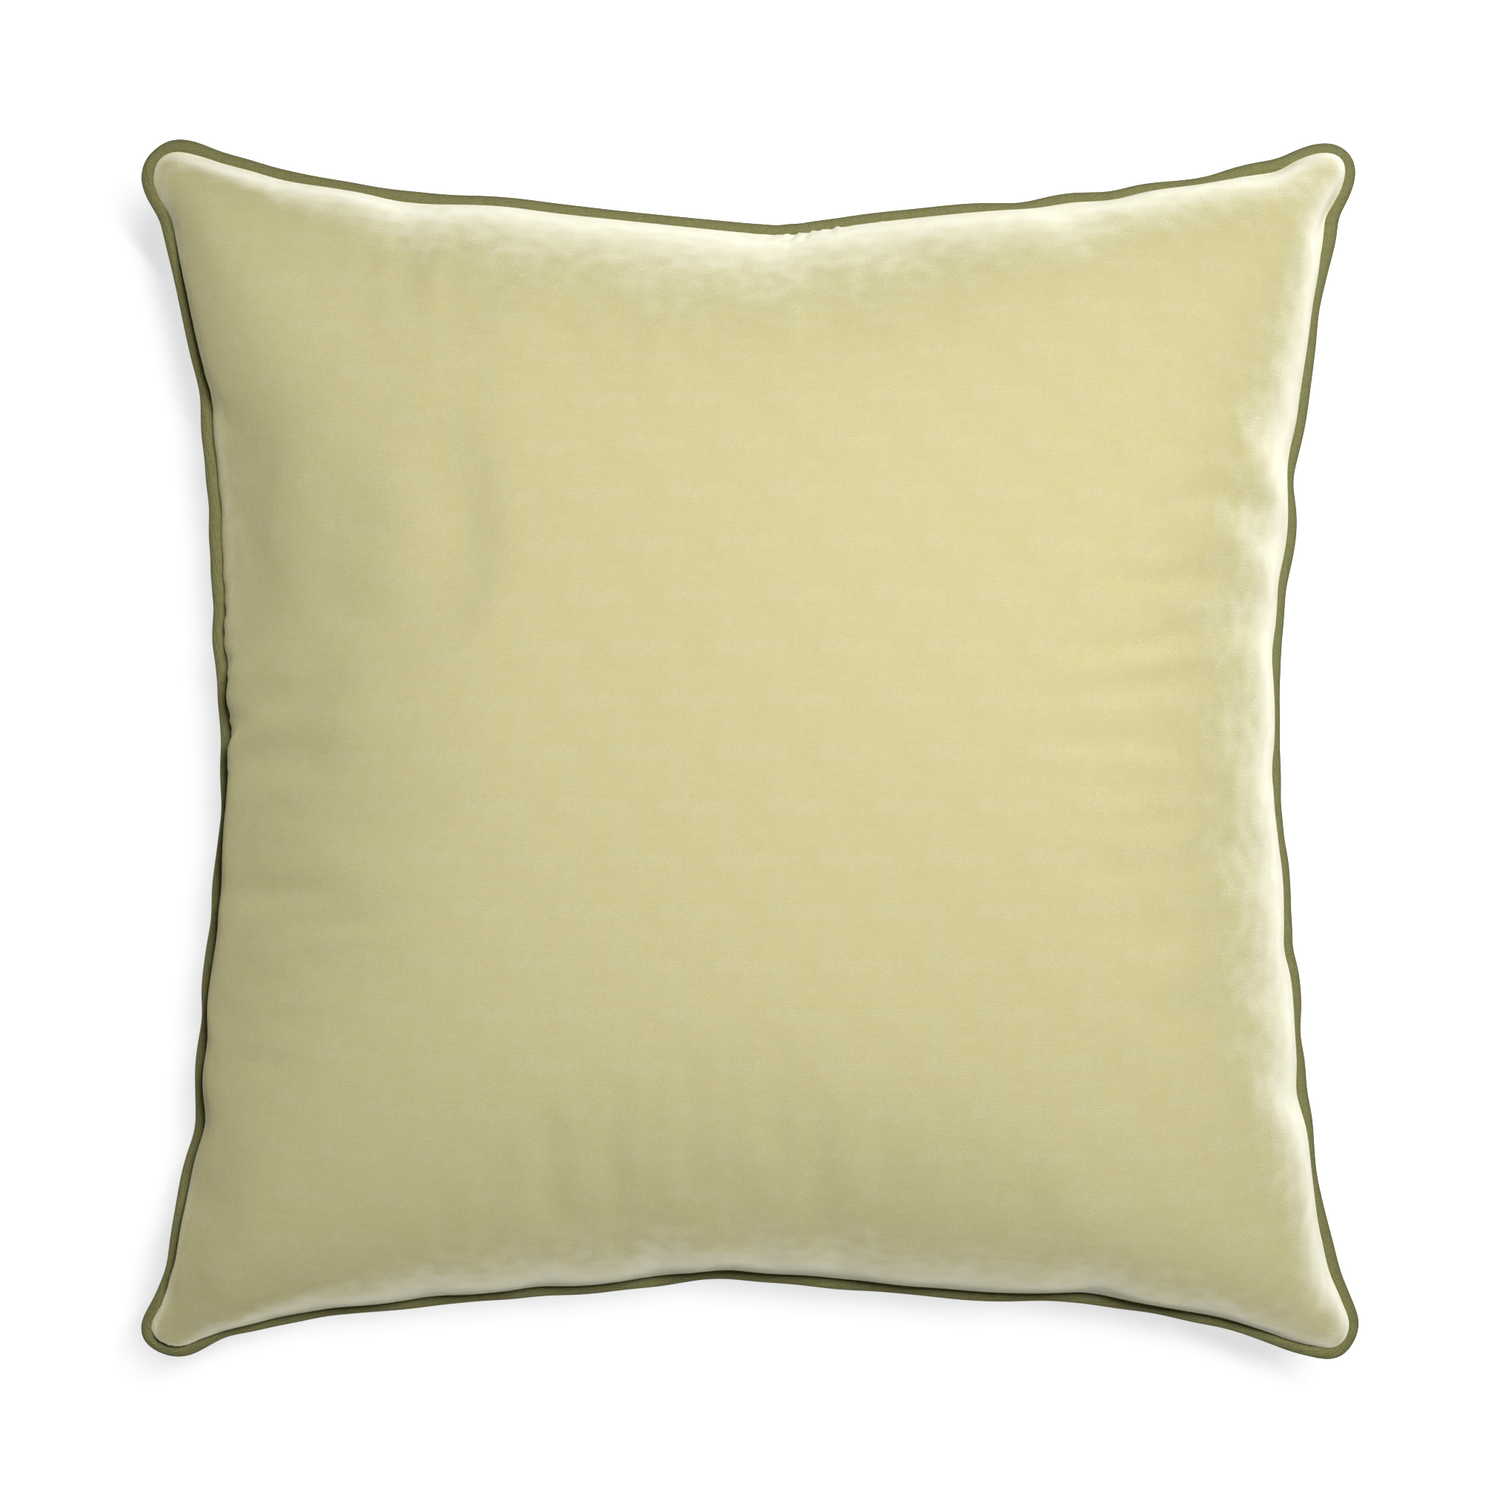 Euro-sham pear velvet custom pillow with moss piping on white background